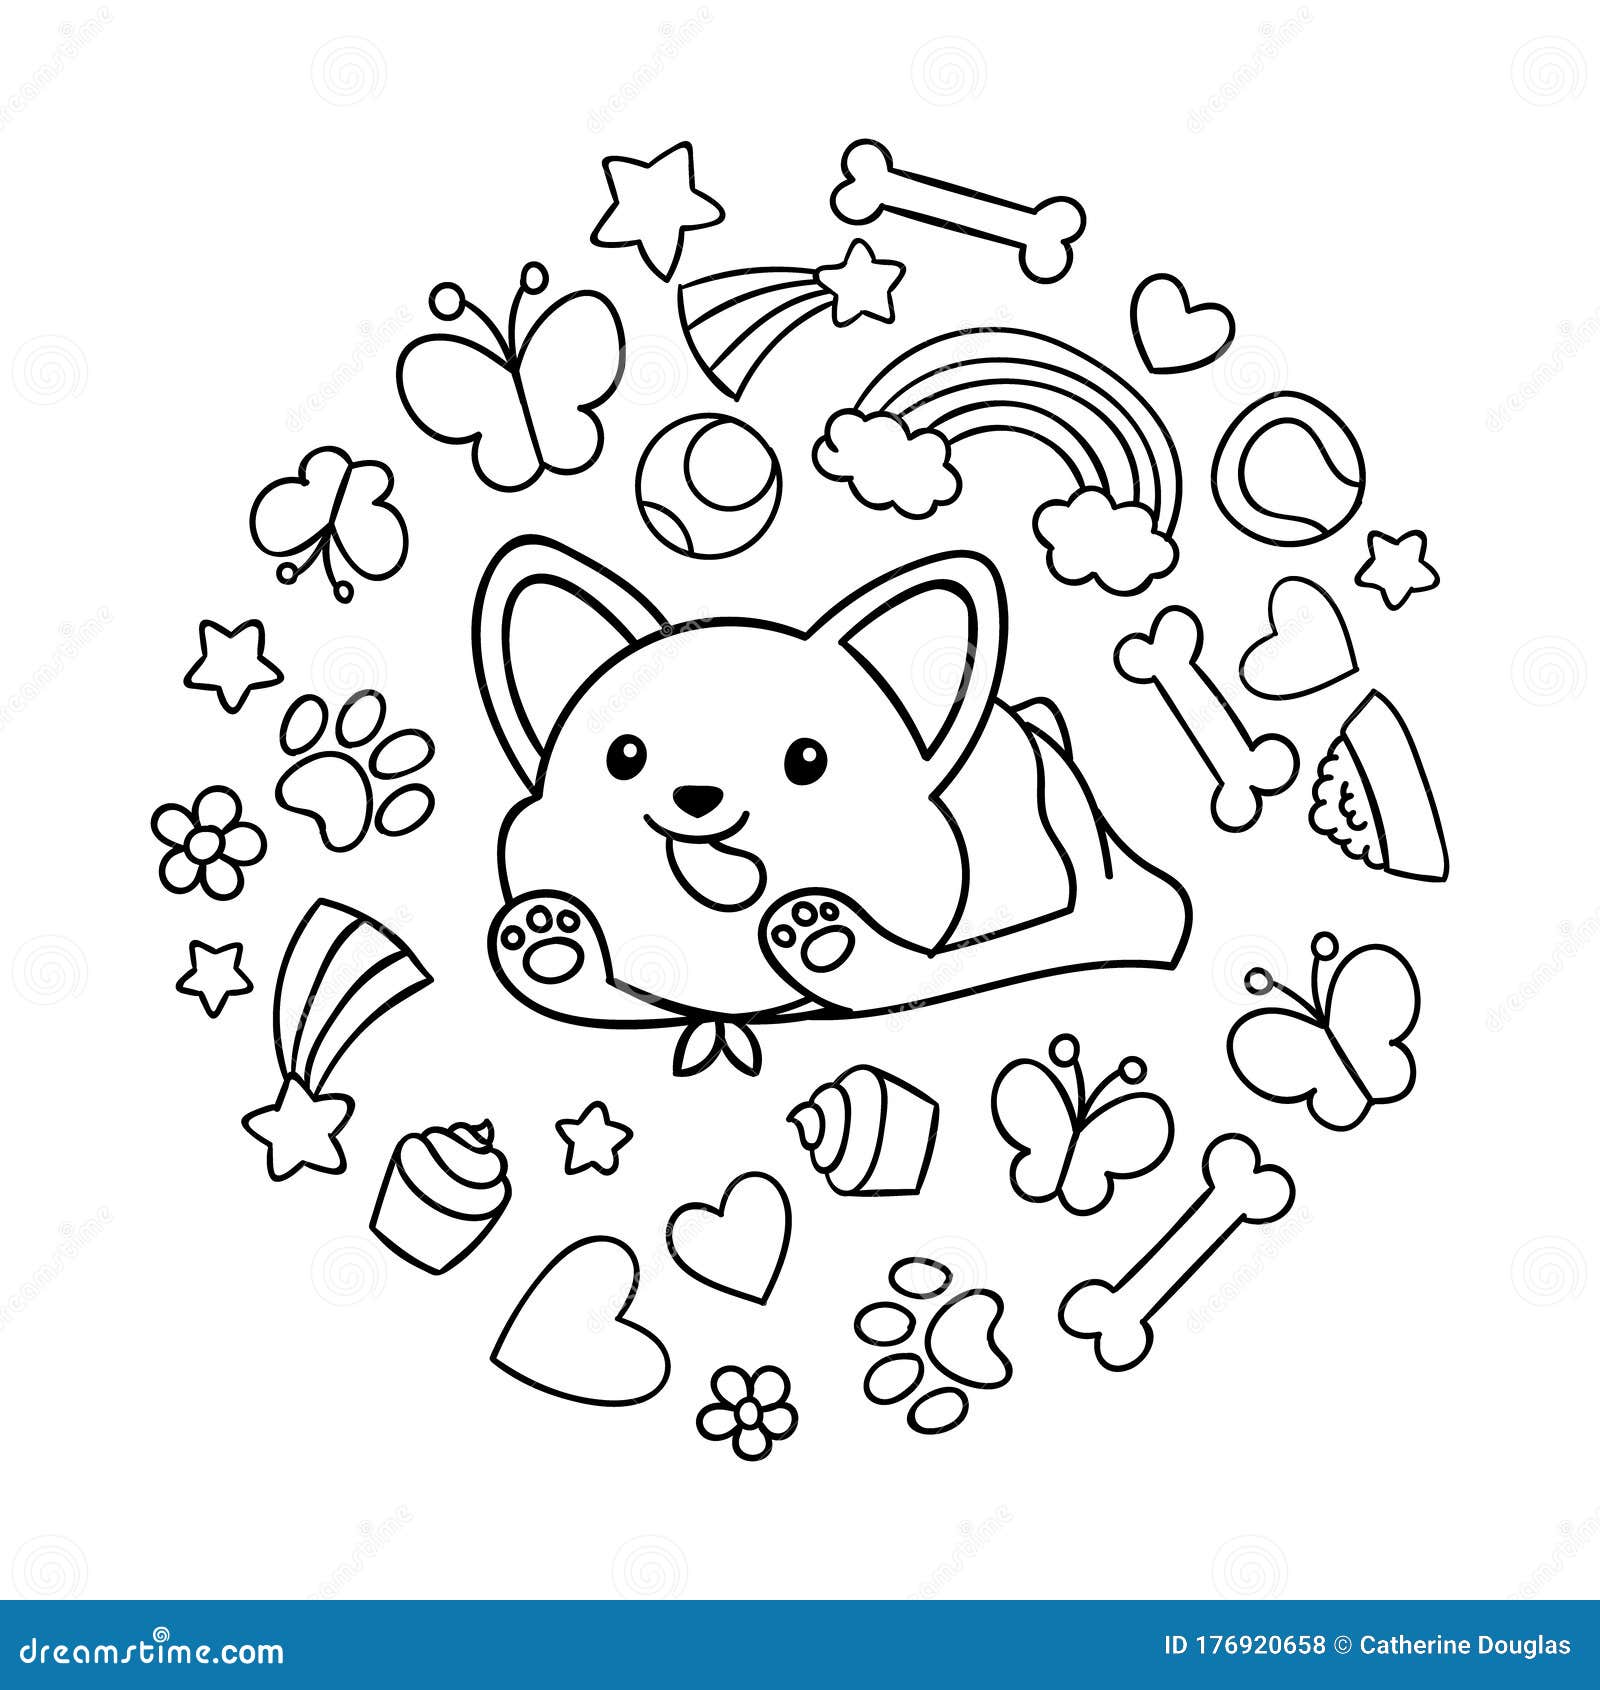 Download Coloring Pages Black And White Cute Kawaii Hand Drawn Corgi Dog Doodles Circle Print Stock Vector Illustration Of Kawaii Boun 176920658